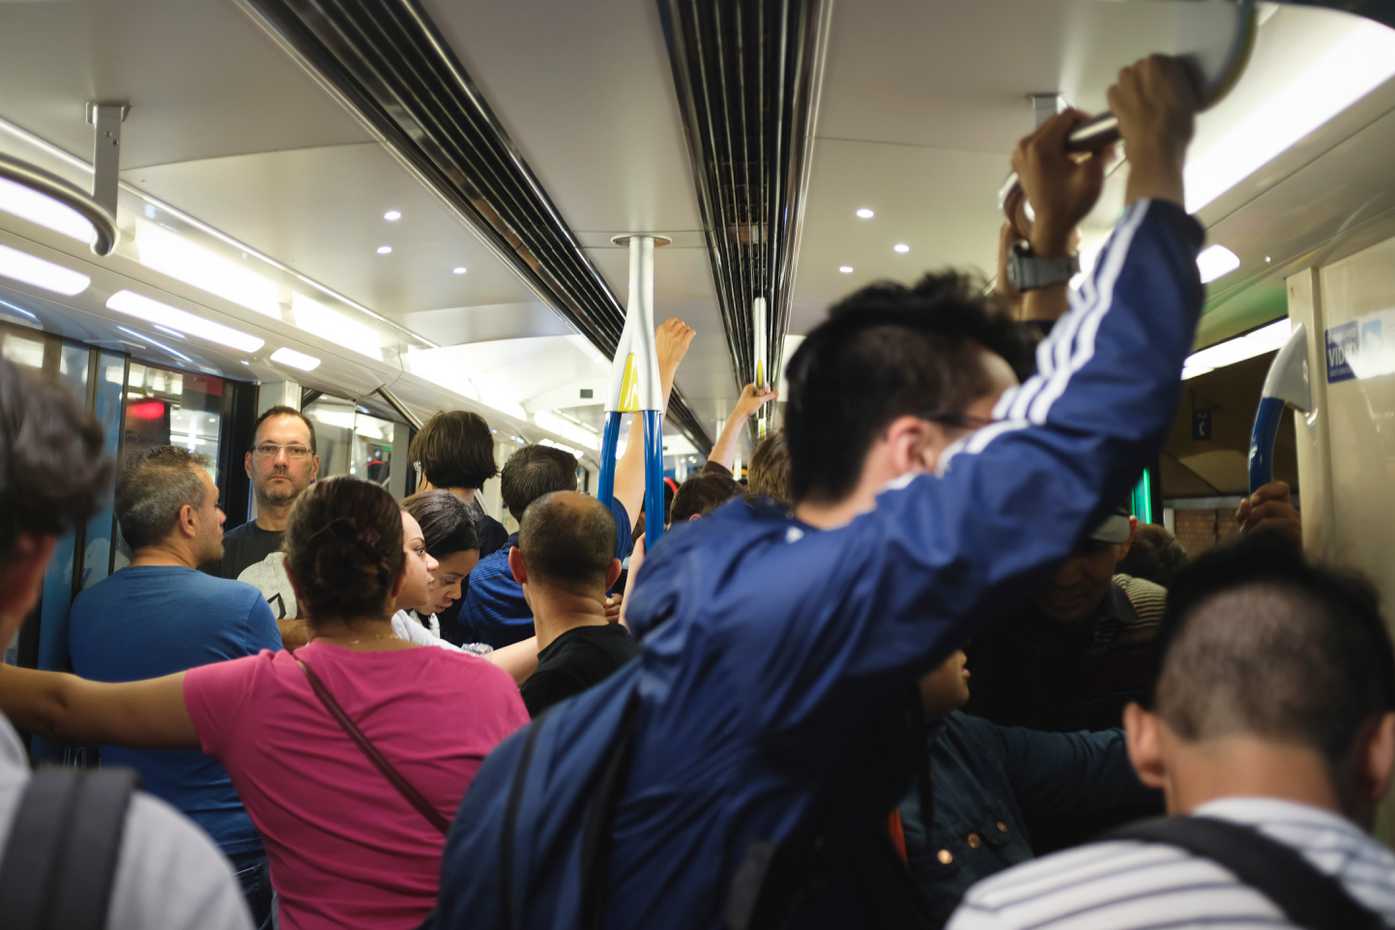 A crowded metro traincar